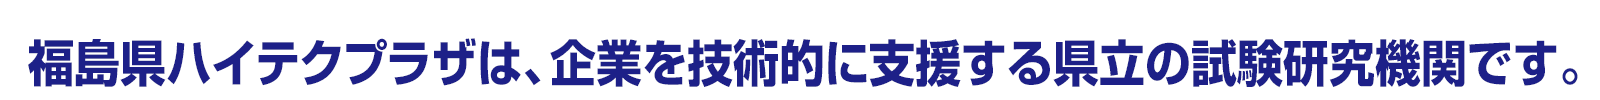 福島県ハイテクプラザは、企業を技術的に支援する県立の試験研究機関です。